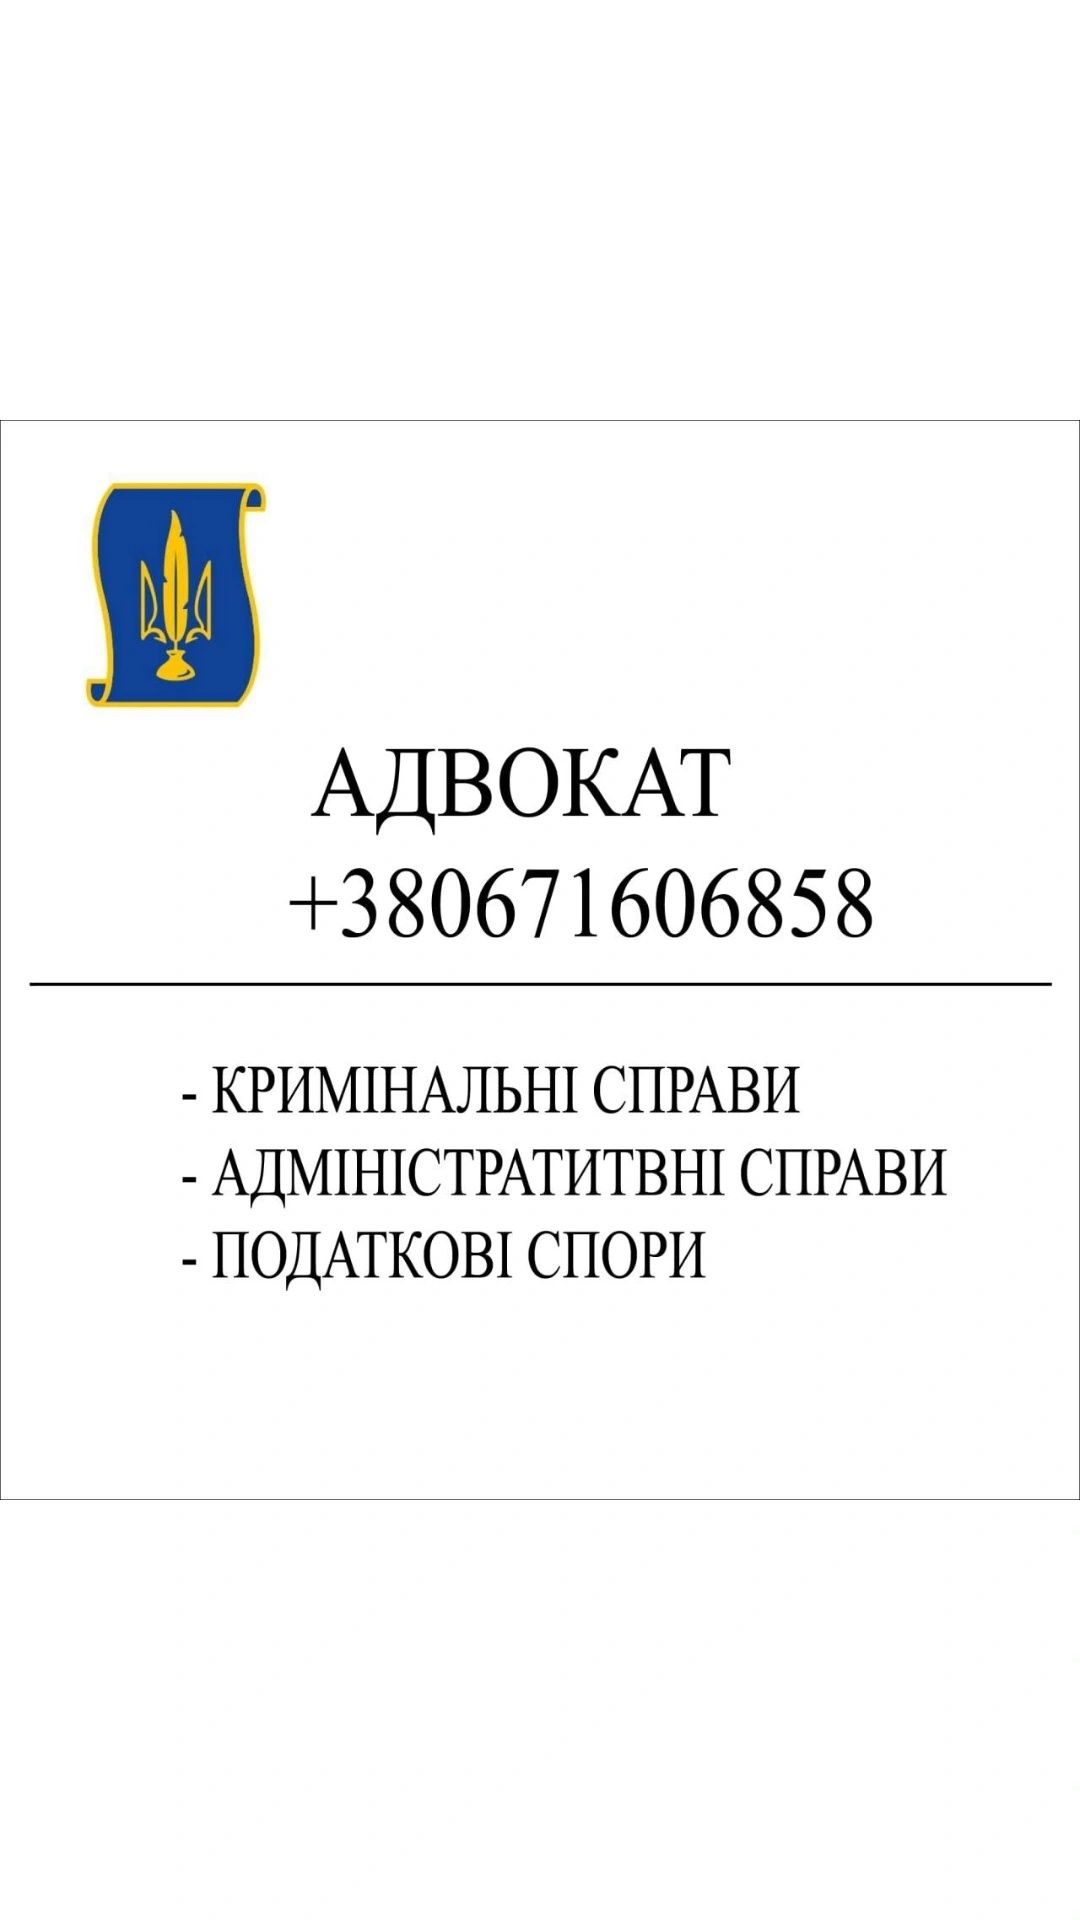 Адвокат, юридична консультация, м. Дніпро